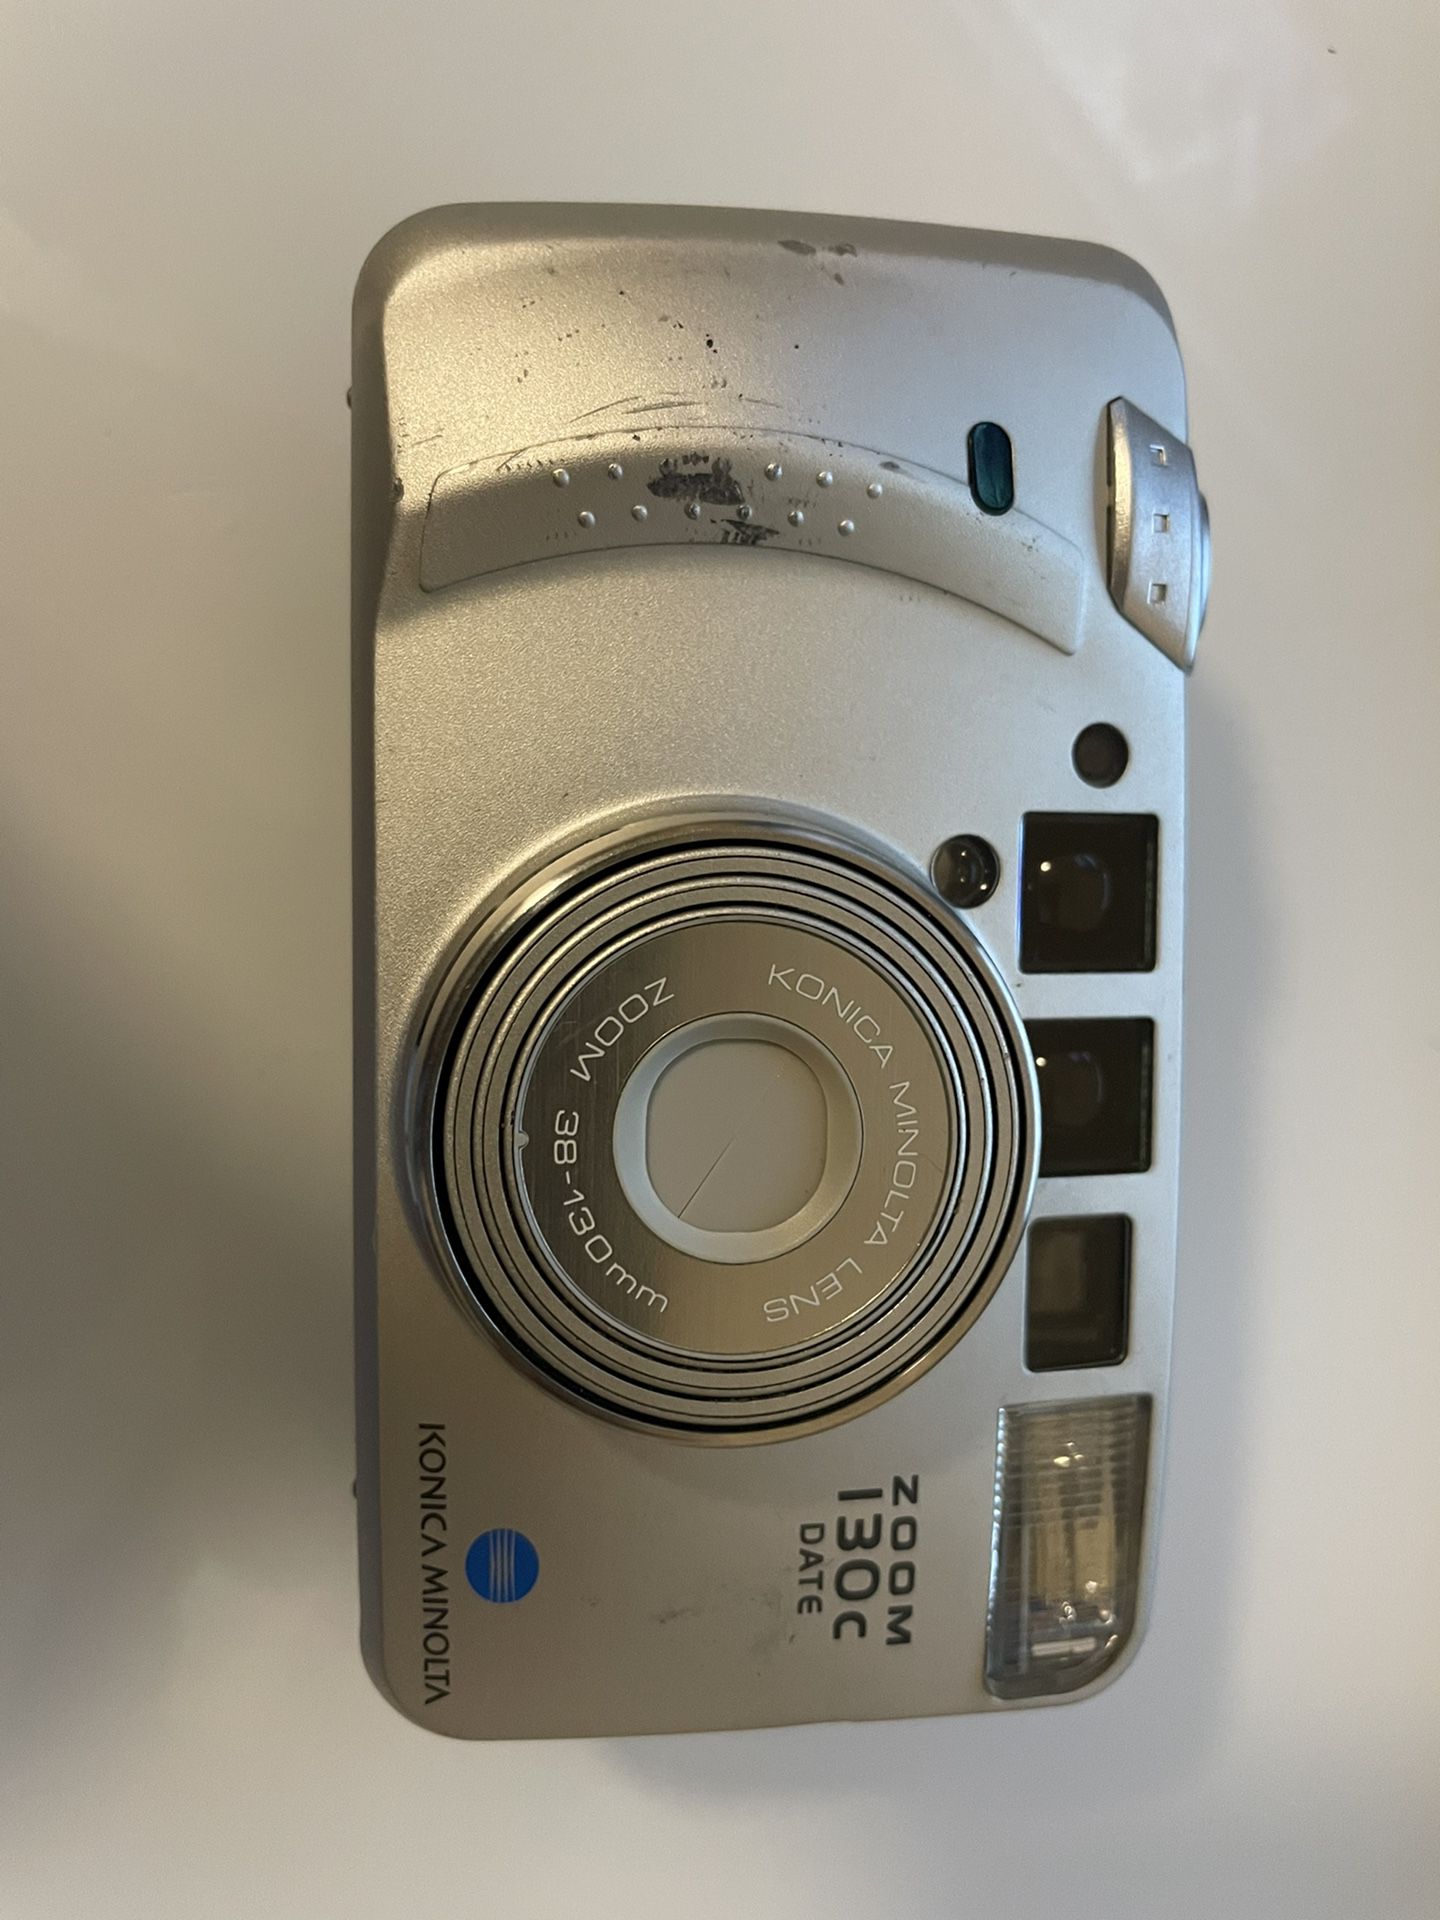 Minolta 35mm camera